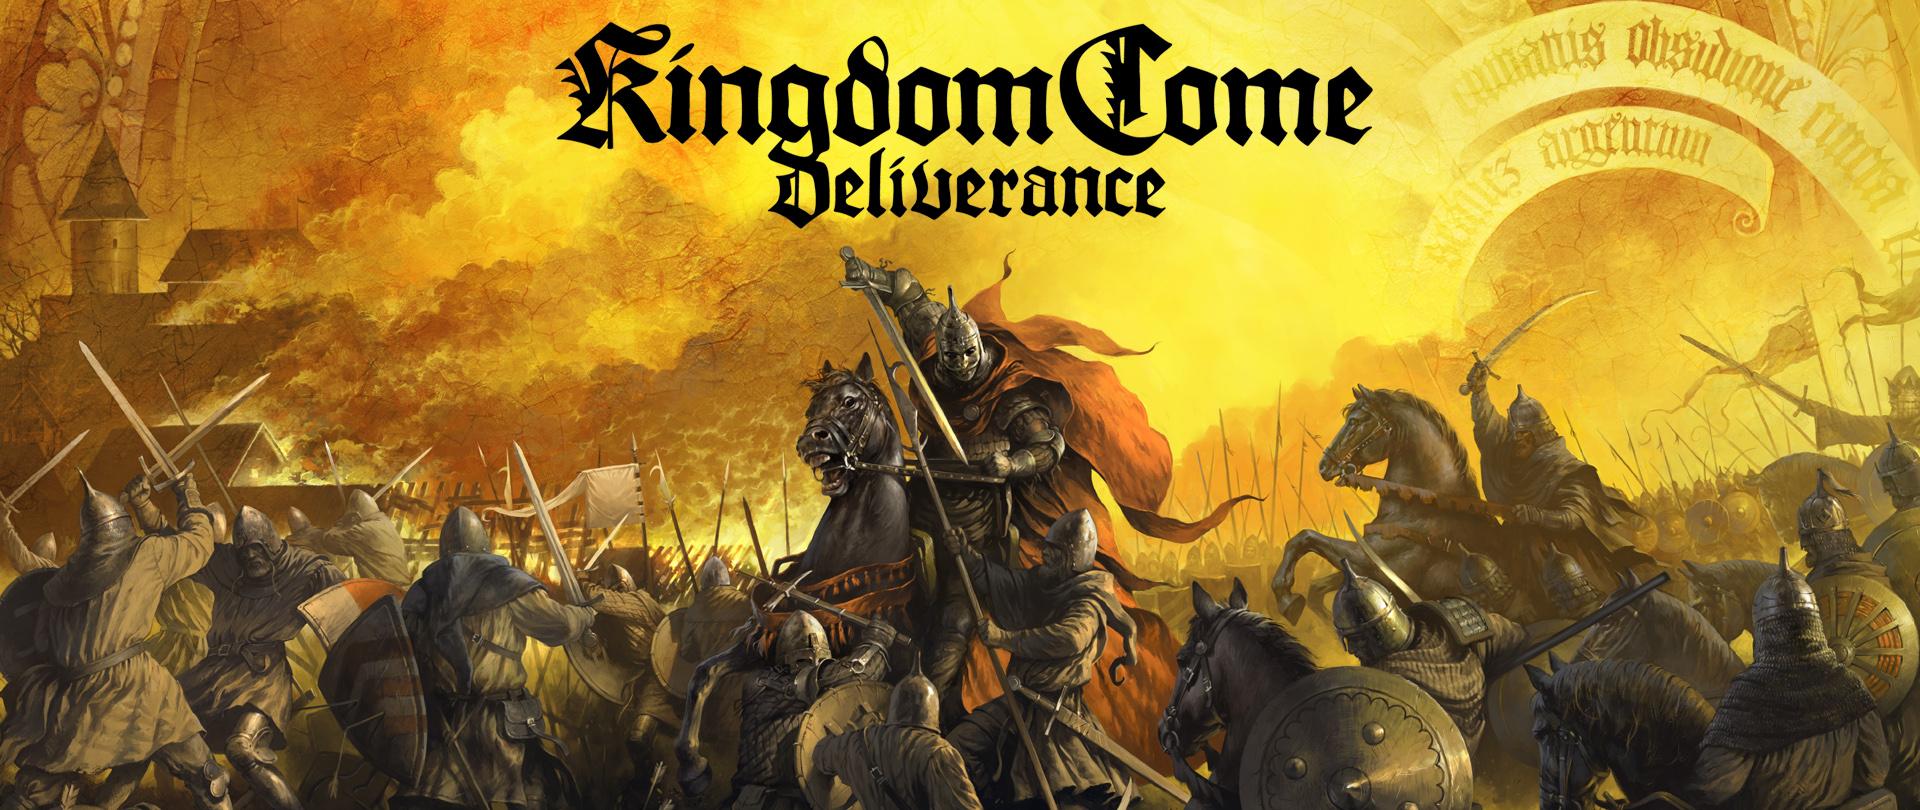 Free download Kingdom Come Deliverance HD Wallpaper